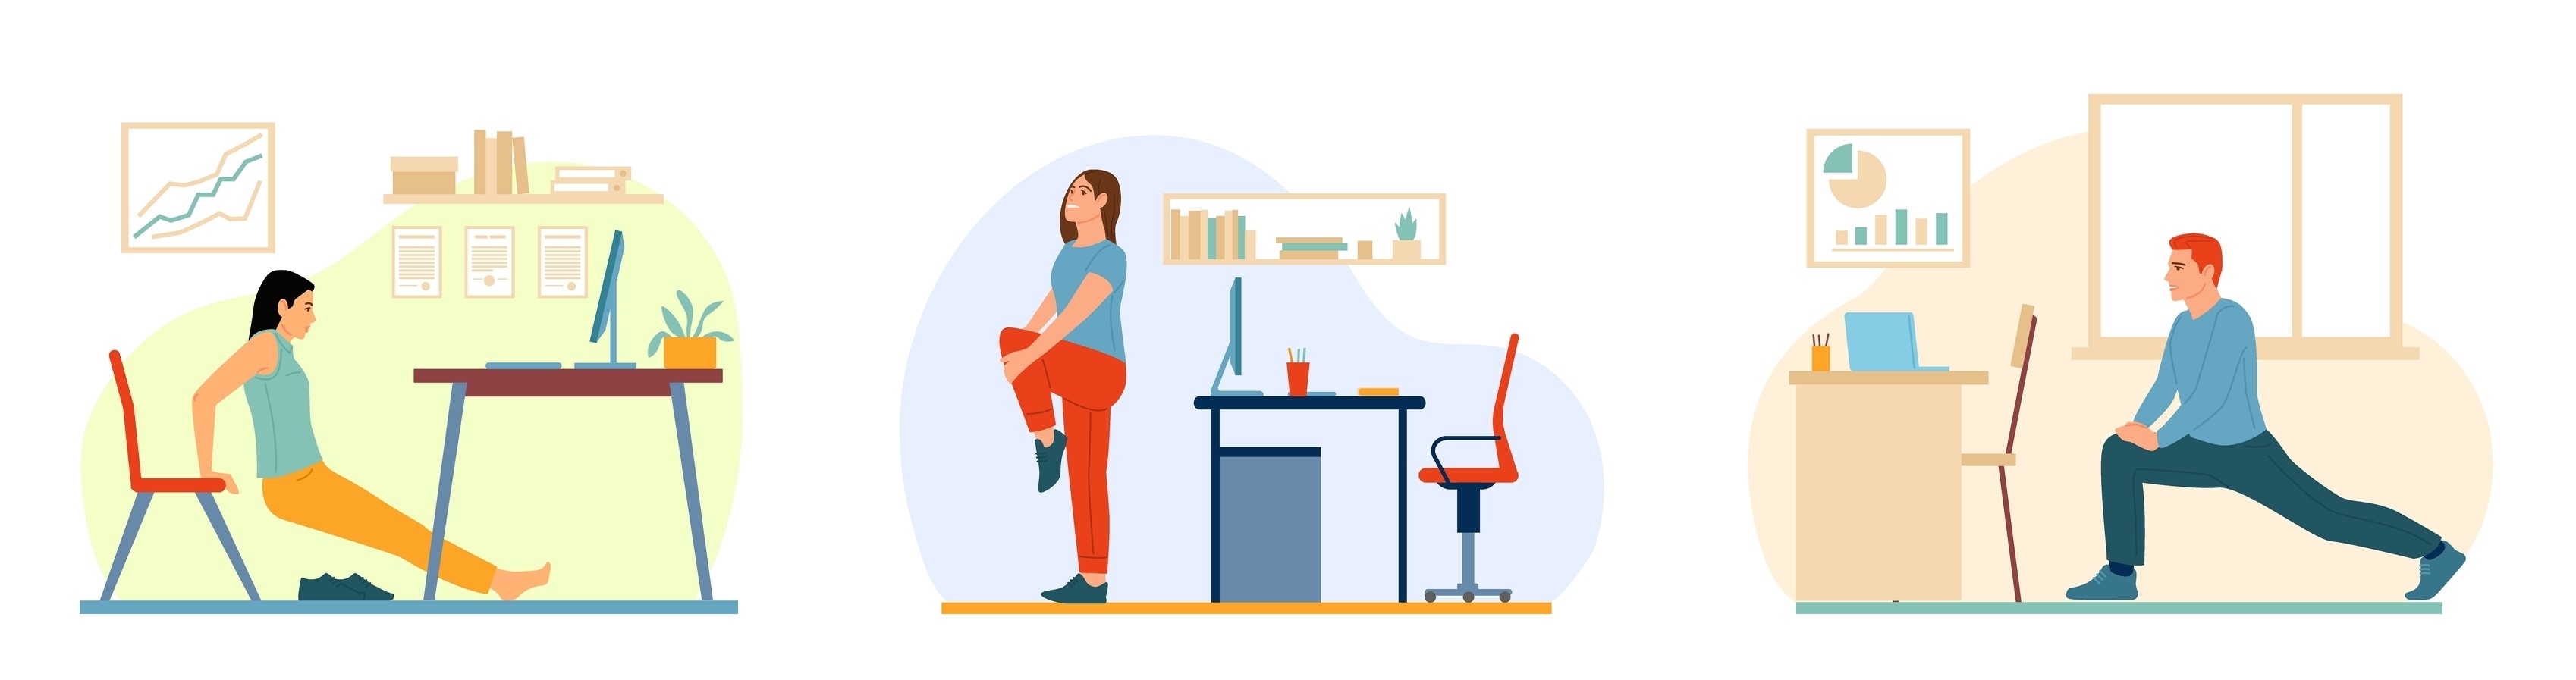 Il·lustració amb persones fent exercici a l'oficina